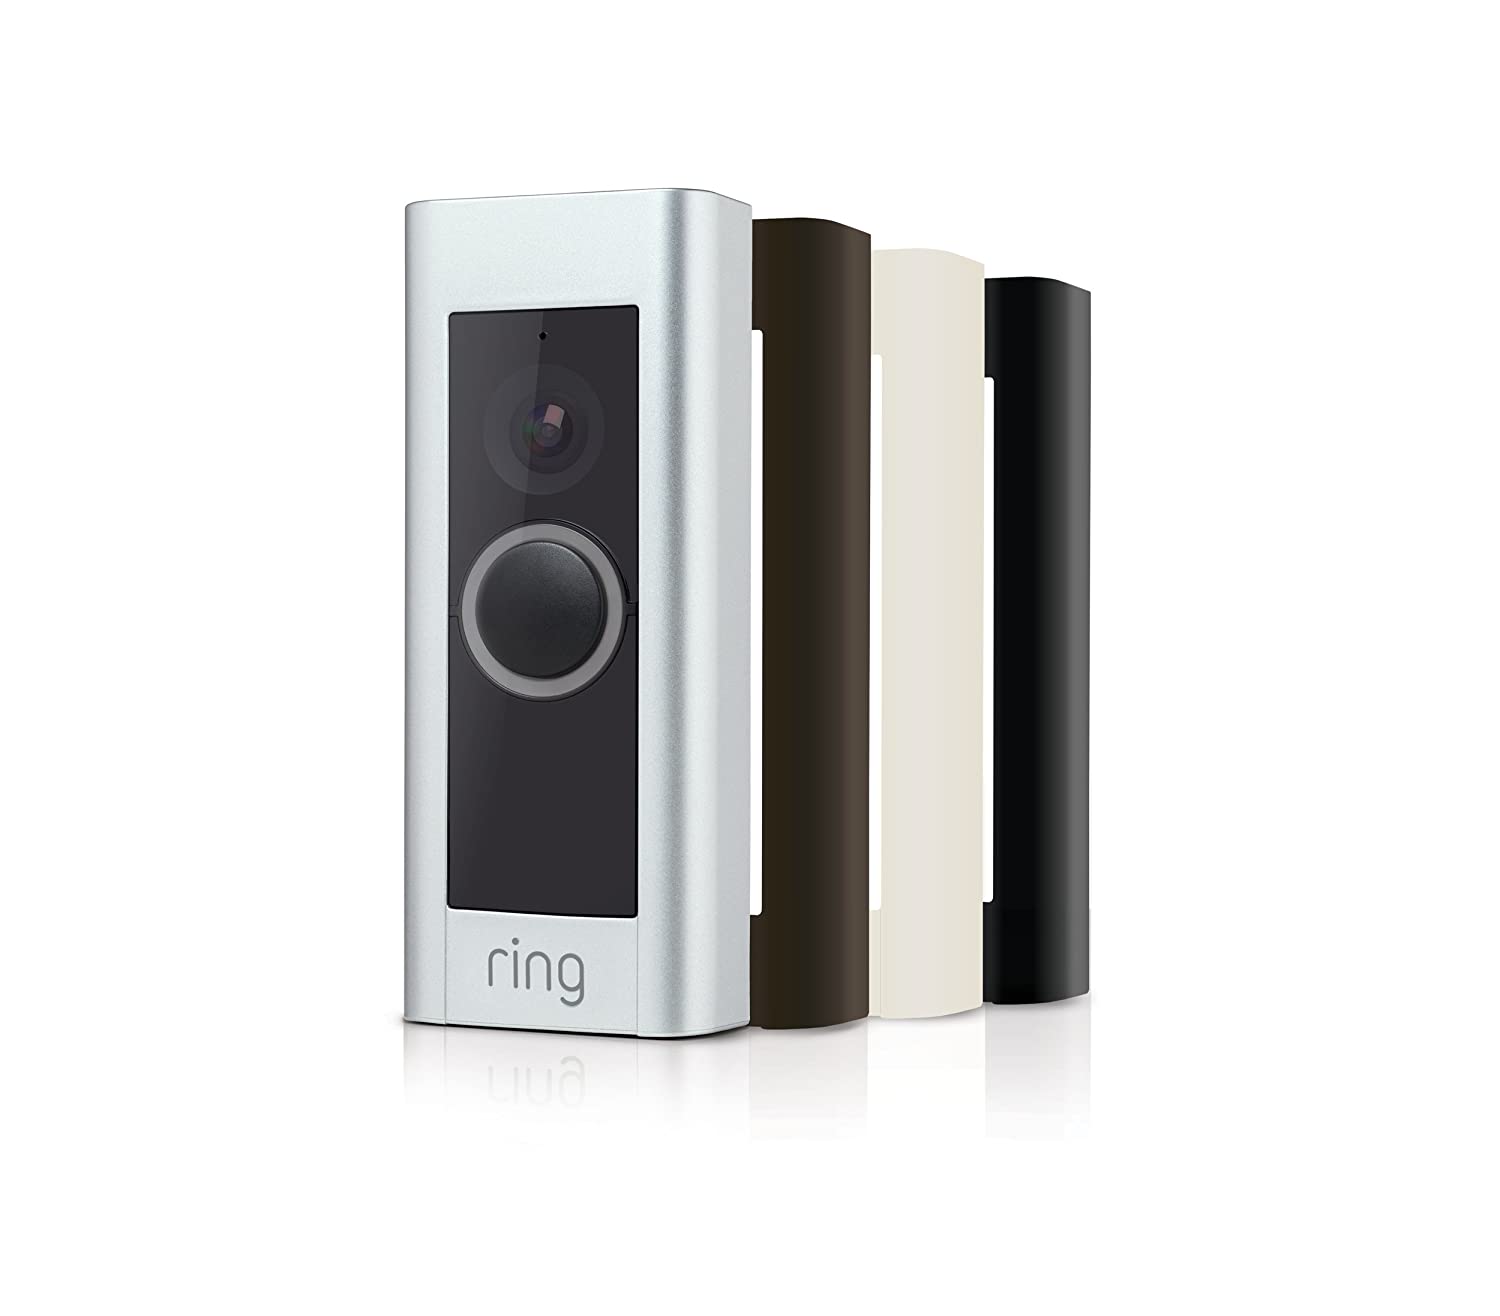 Videoportero IP Ring Video Doorbell Pro con WLAN en cuatro colores diferentes